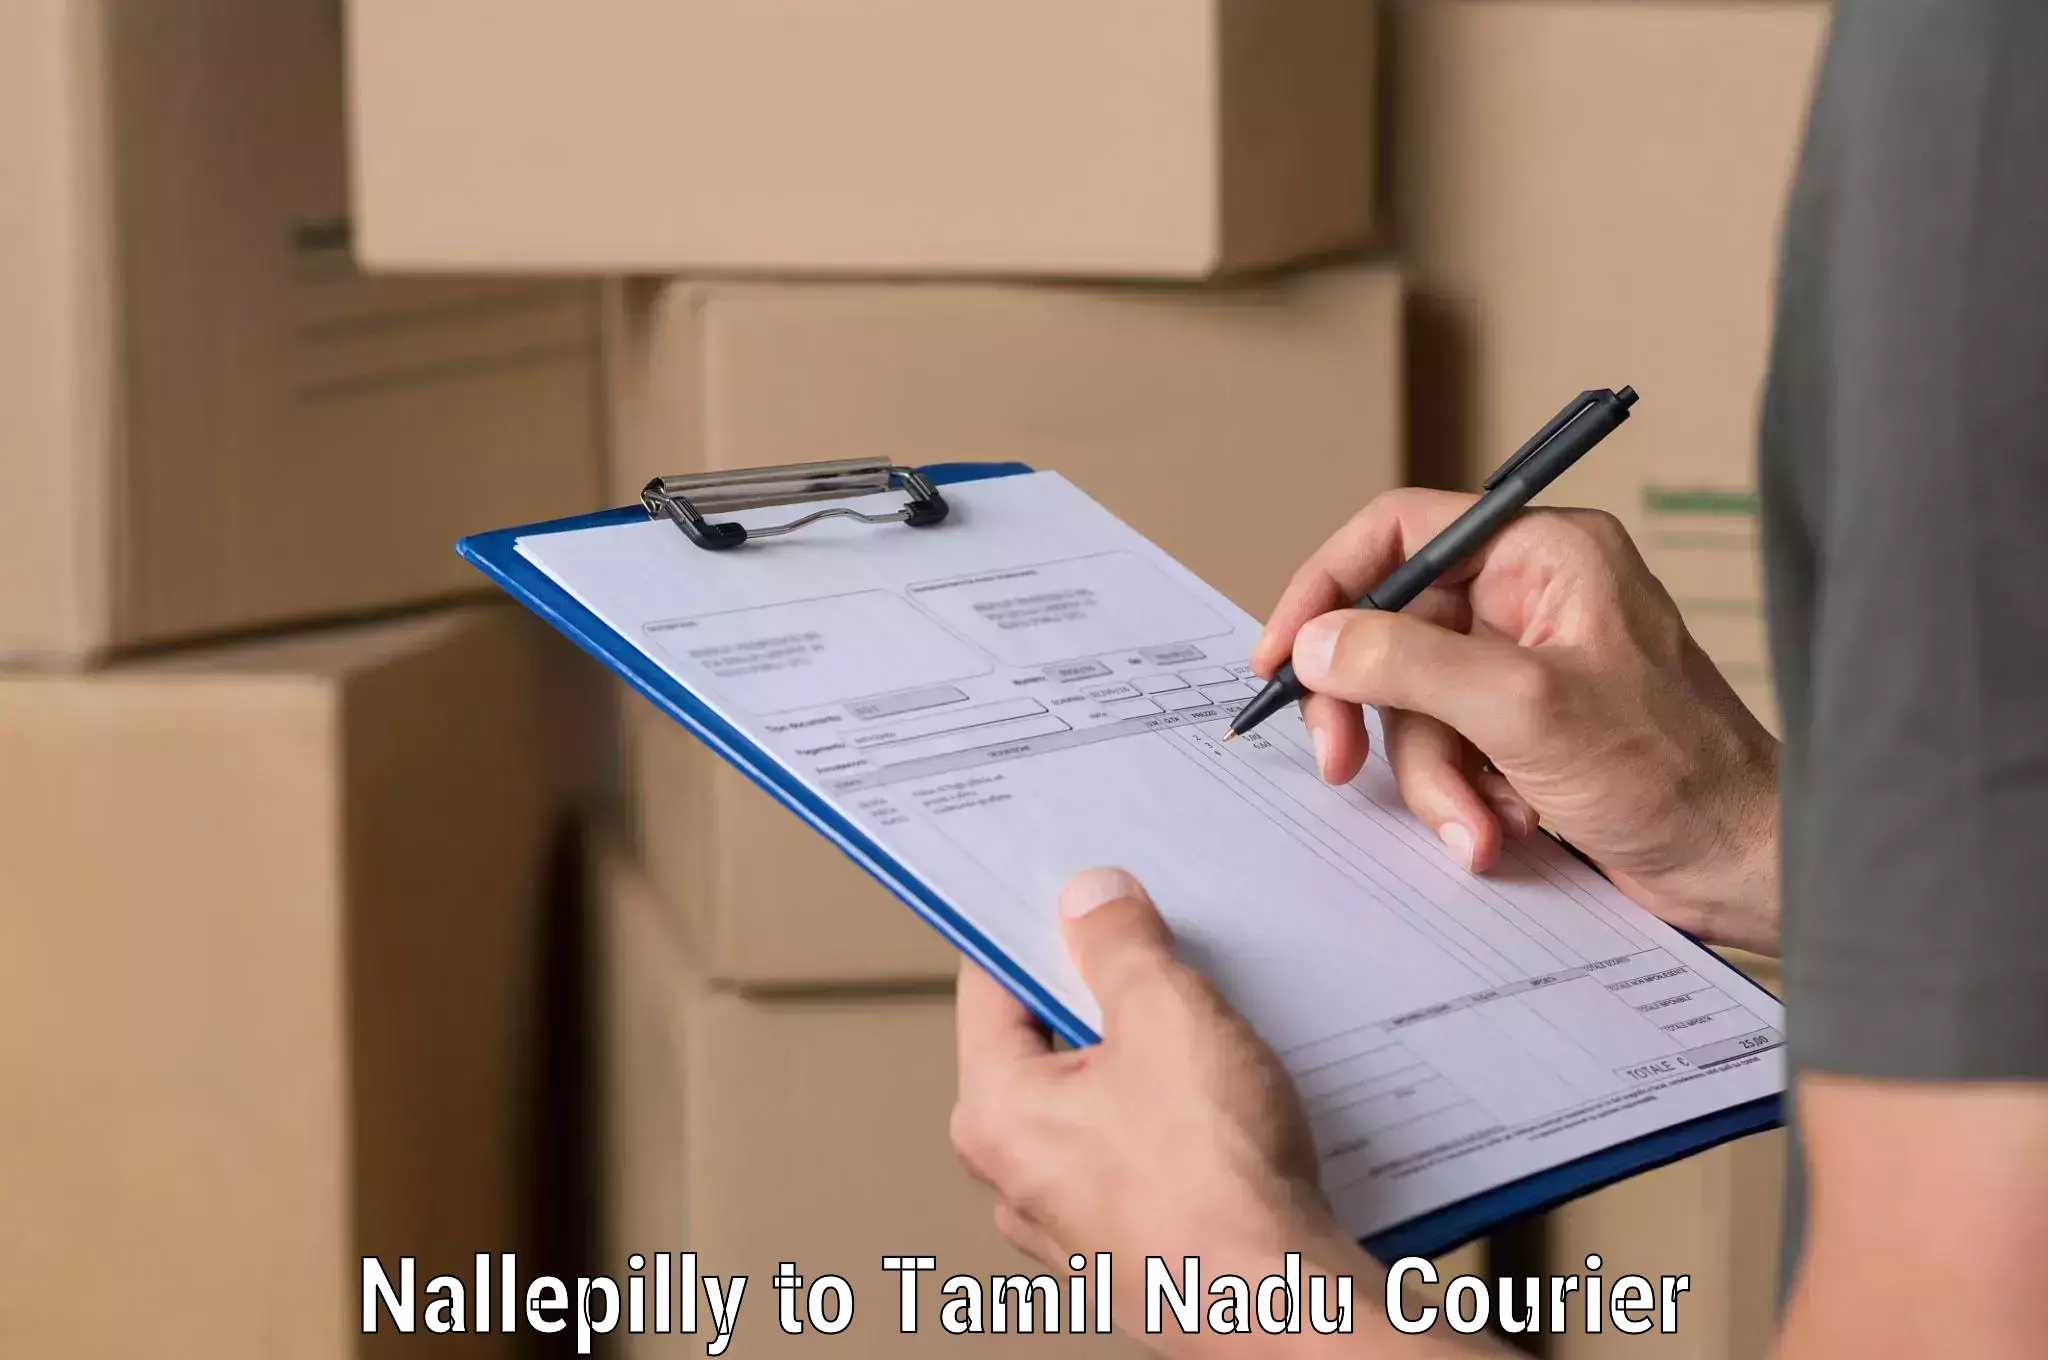 Seamless shipping experience Nallepilly to Marakkanam